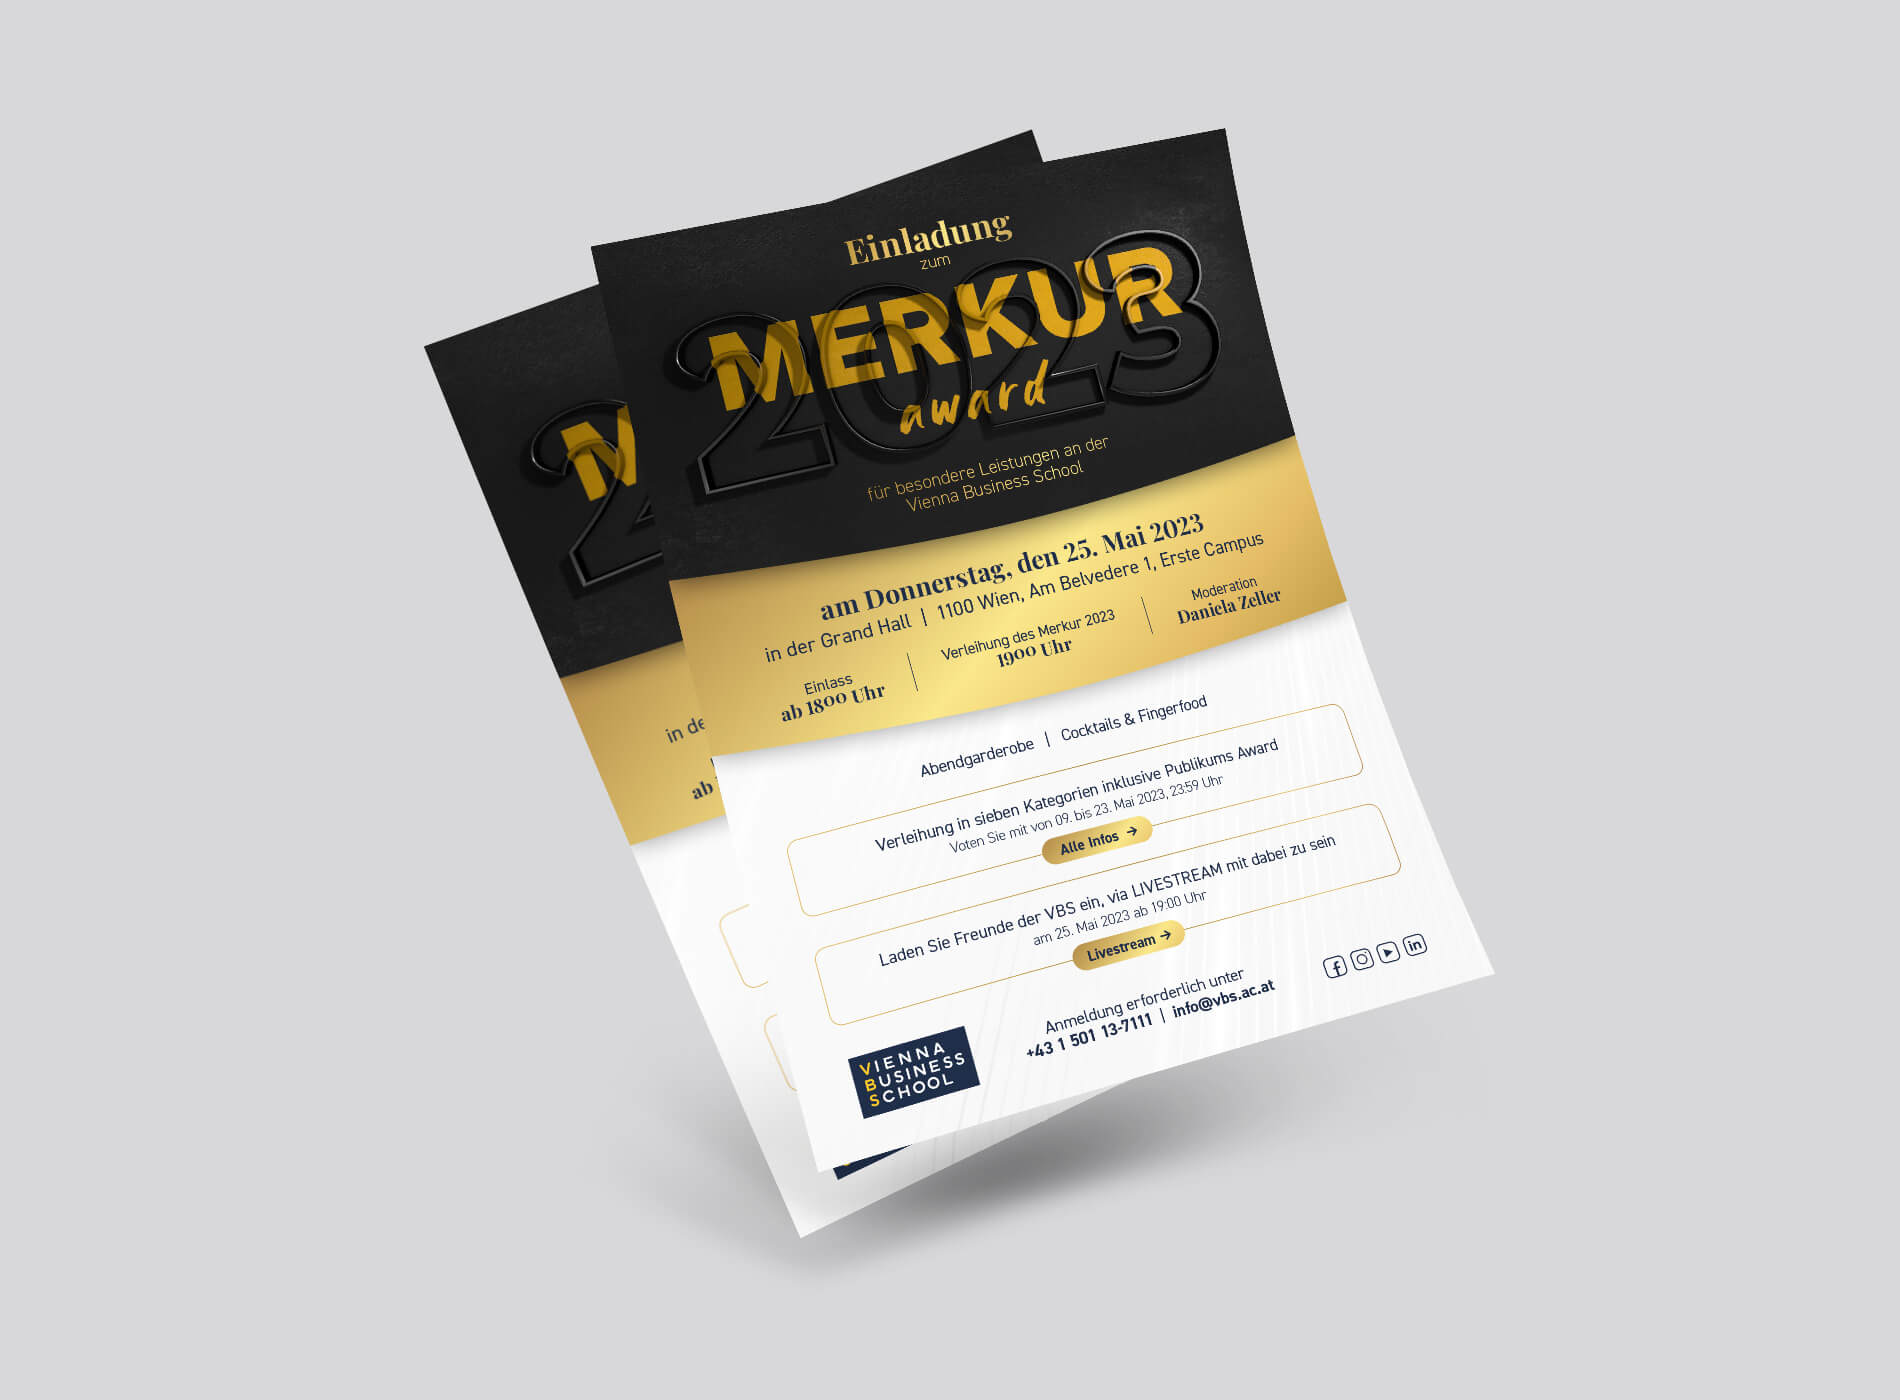 Vienna Business School Merkur Award Flyer Grafikdesign